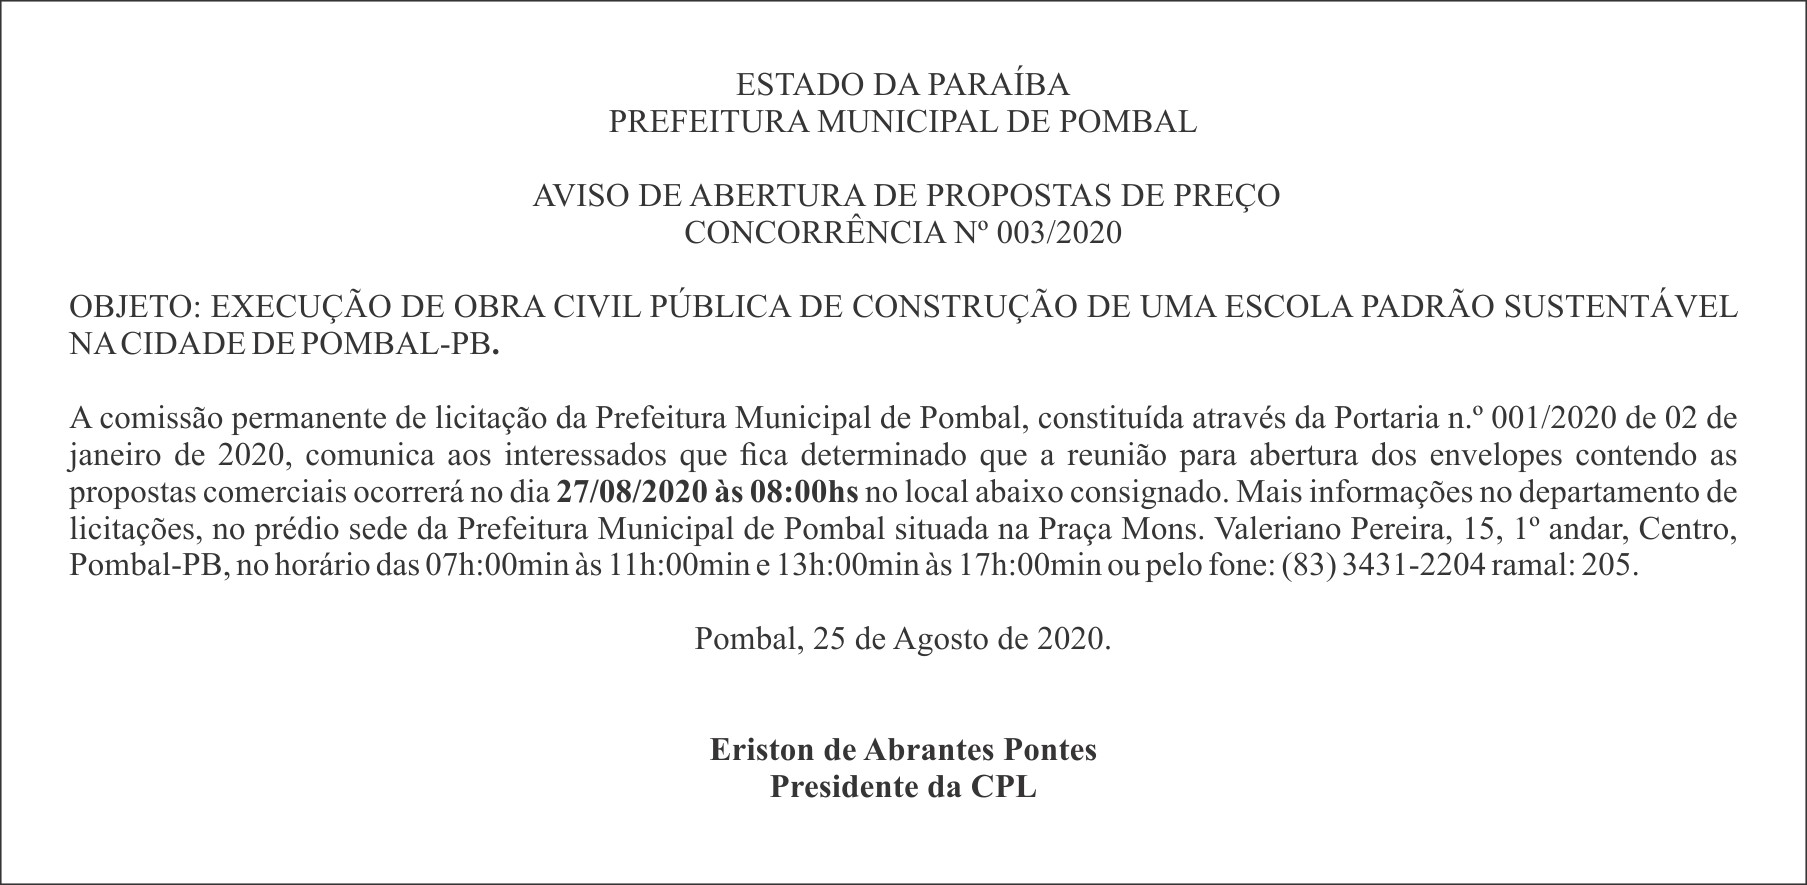 PREFEITURA MUNICIPAL DE POMBAL – AVISO DE ABERTURA DE PROPOSTAS DE PREÇO – CONCORRÊNCIA Nº 003/2020